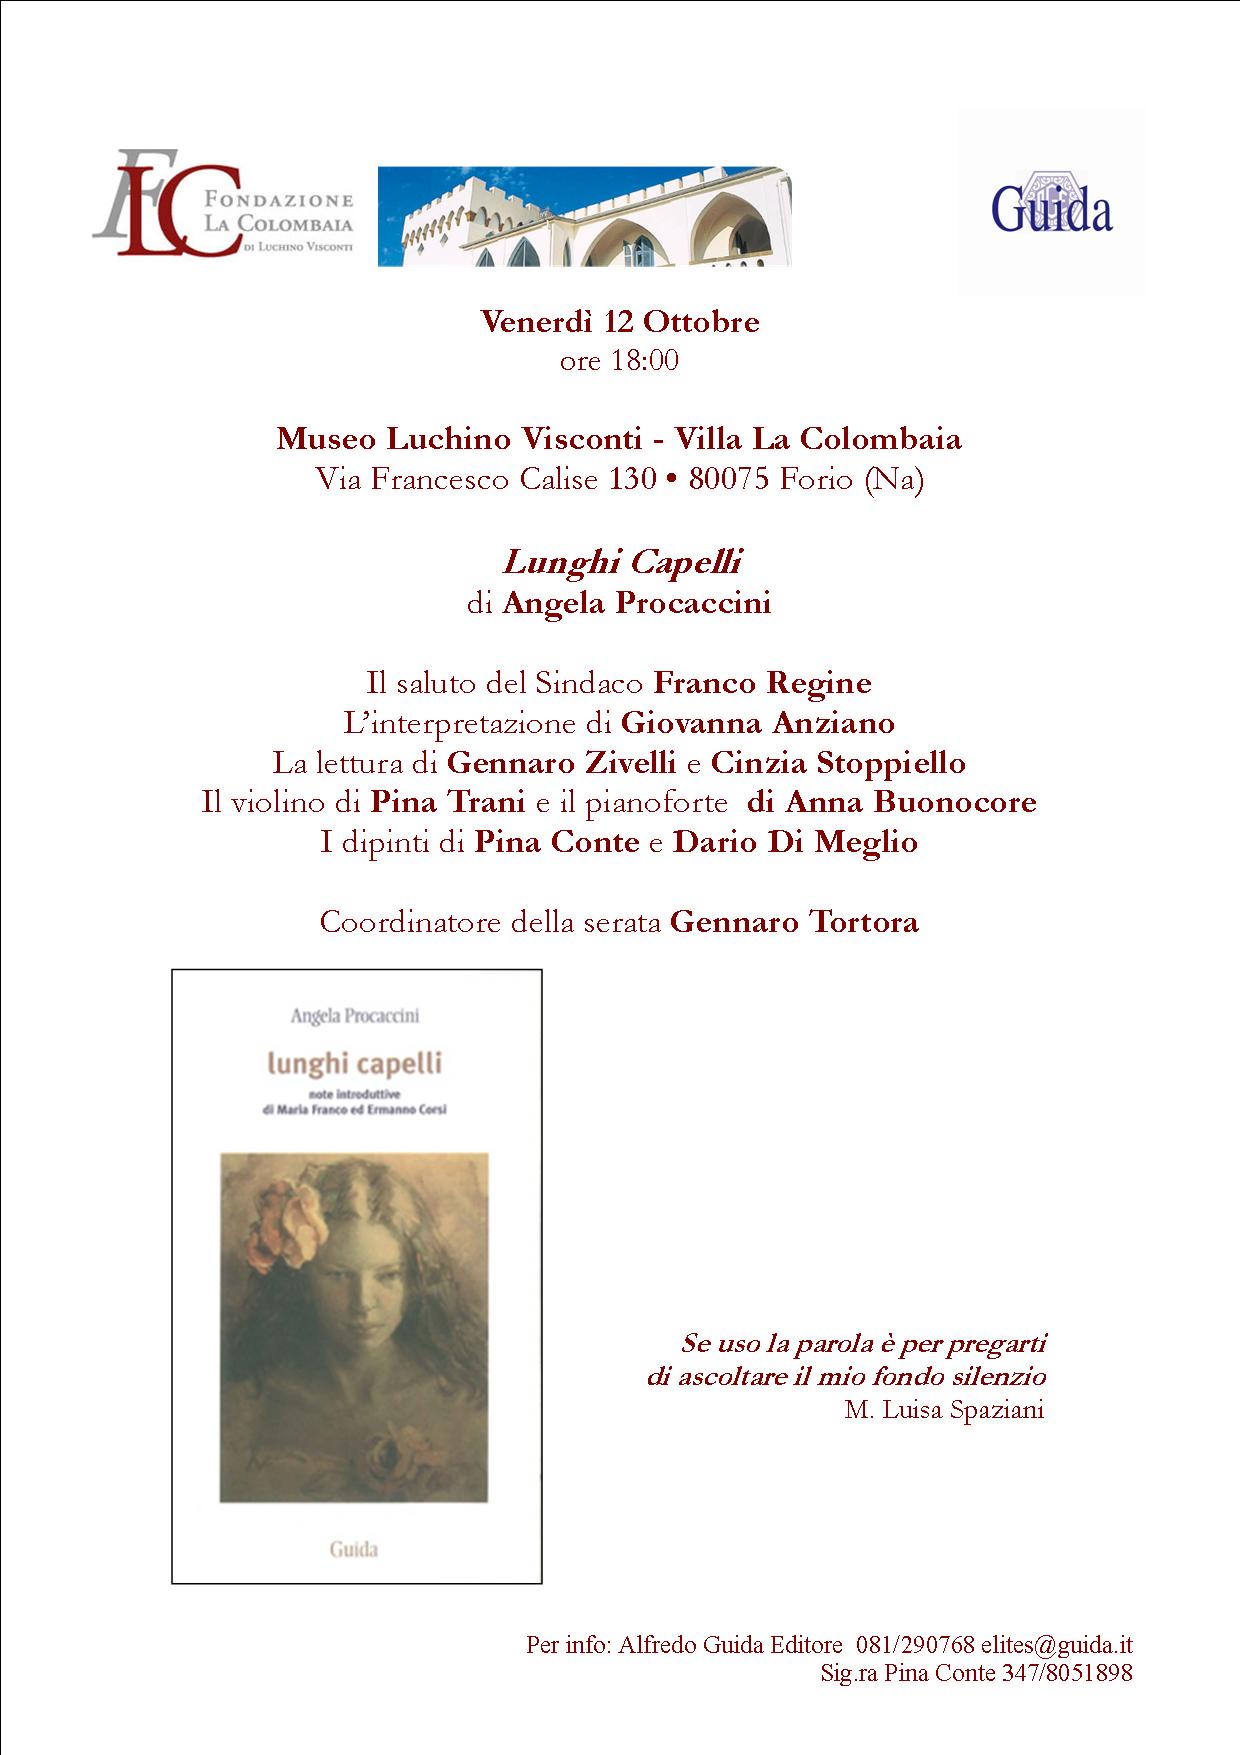 Le poesie Lunghi Capelli (ed. Guida, 2012) di Angela Procaccini